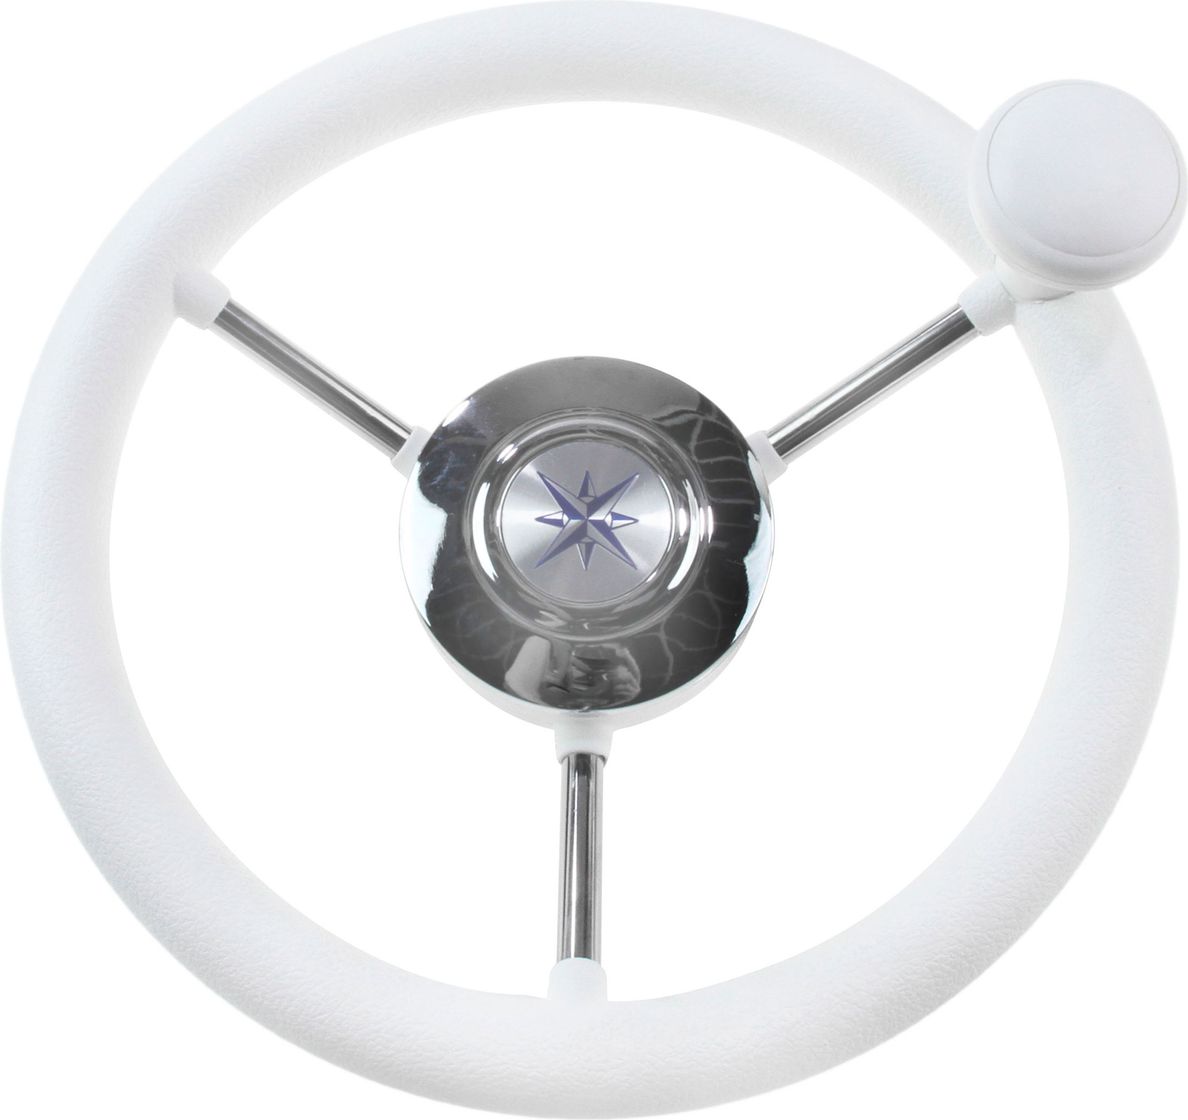 Рулевое колесо LIPARI обод белый, спицы серебряные д. 280 мм со спинером VN828050-08 рулевое колесо leader plast белый обод серебряные спицы д 330 мм vn8330 08